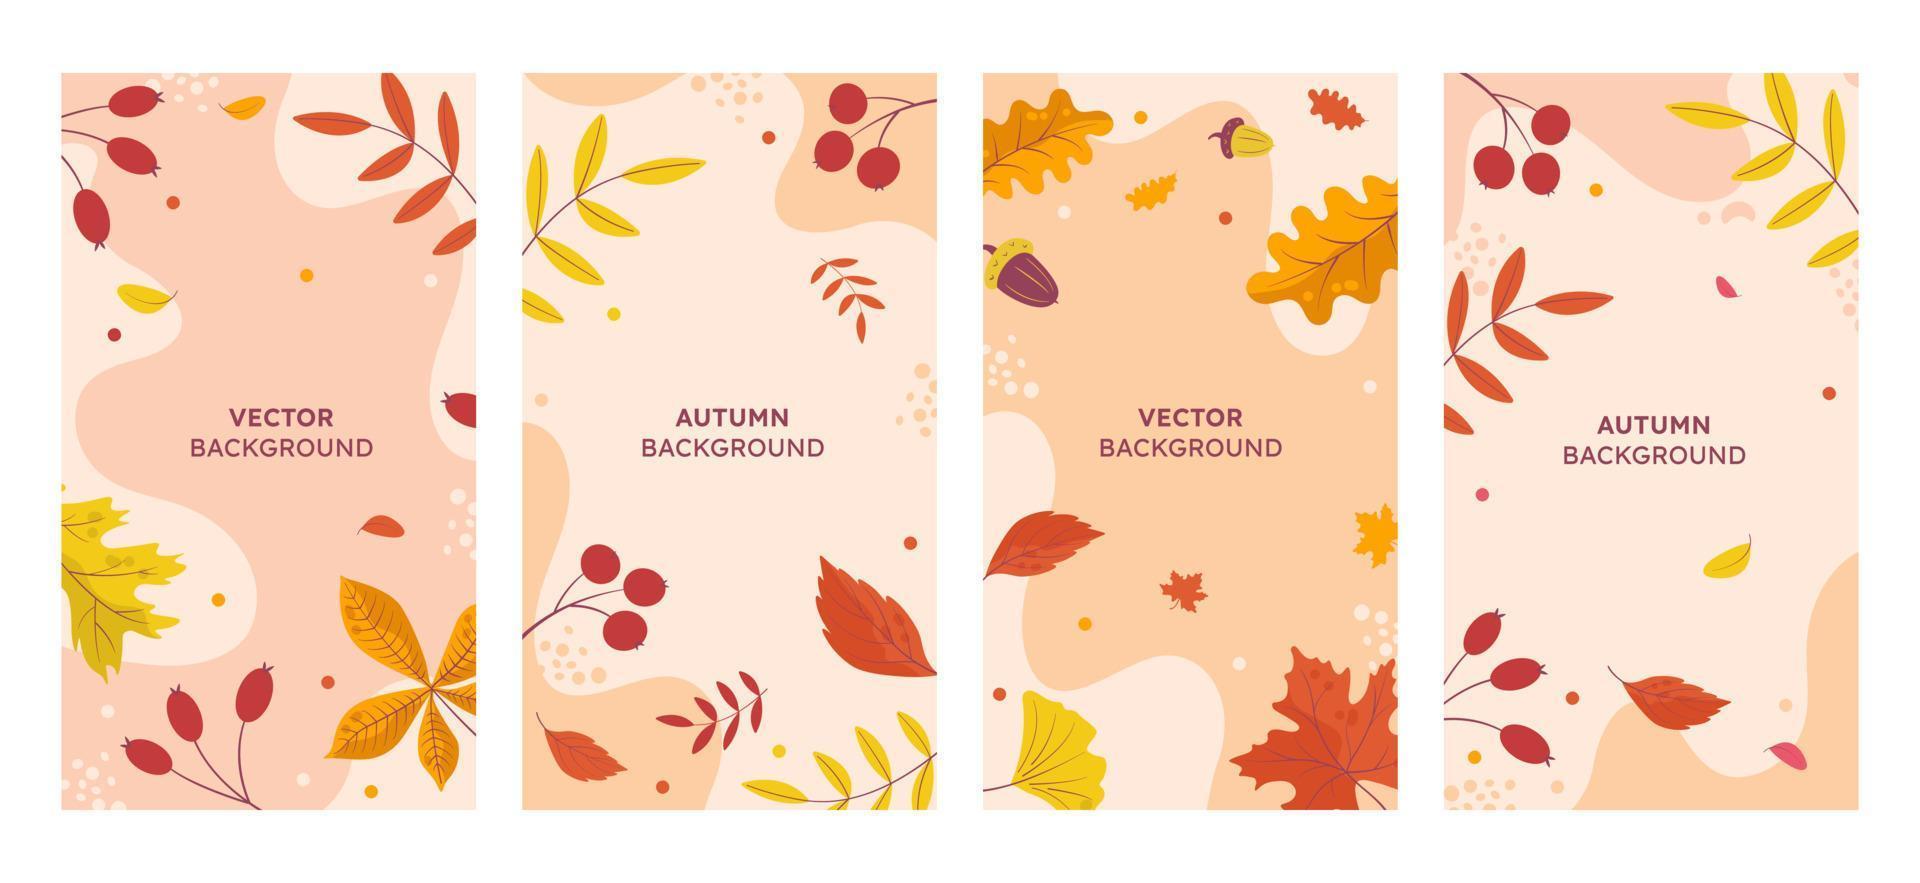 Vektor-Set abstrakter Hintergründe mit einem Platz zum Kopieren von Text - Herbstverkauf - helle, stilvolle Banner, Poster, Cover-Design-Vorlagen, Geschichten in Social-Media-Tapeten mit gelben und orangefarbenen Blättern vektor